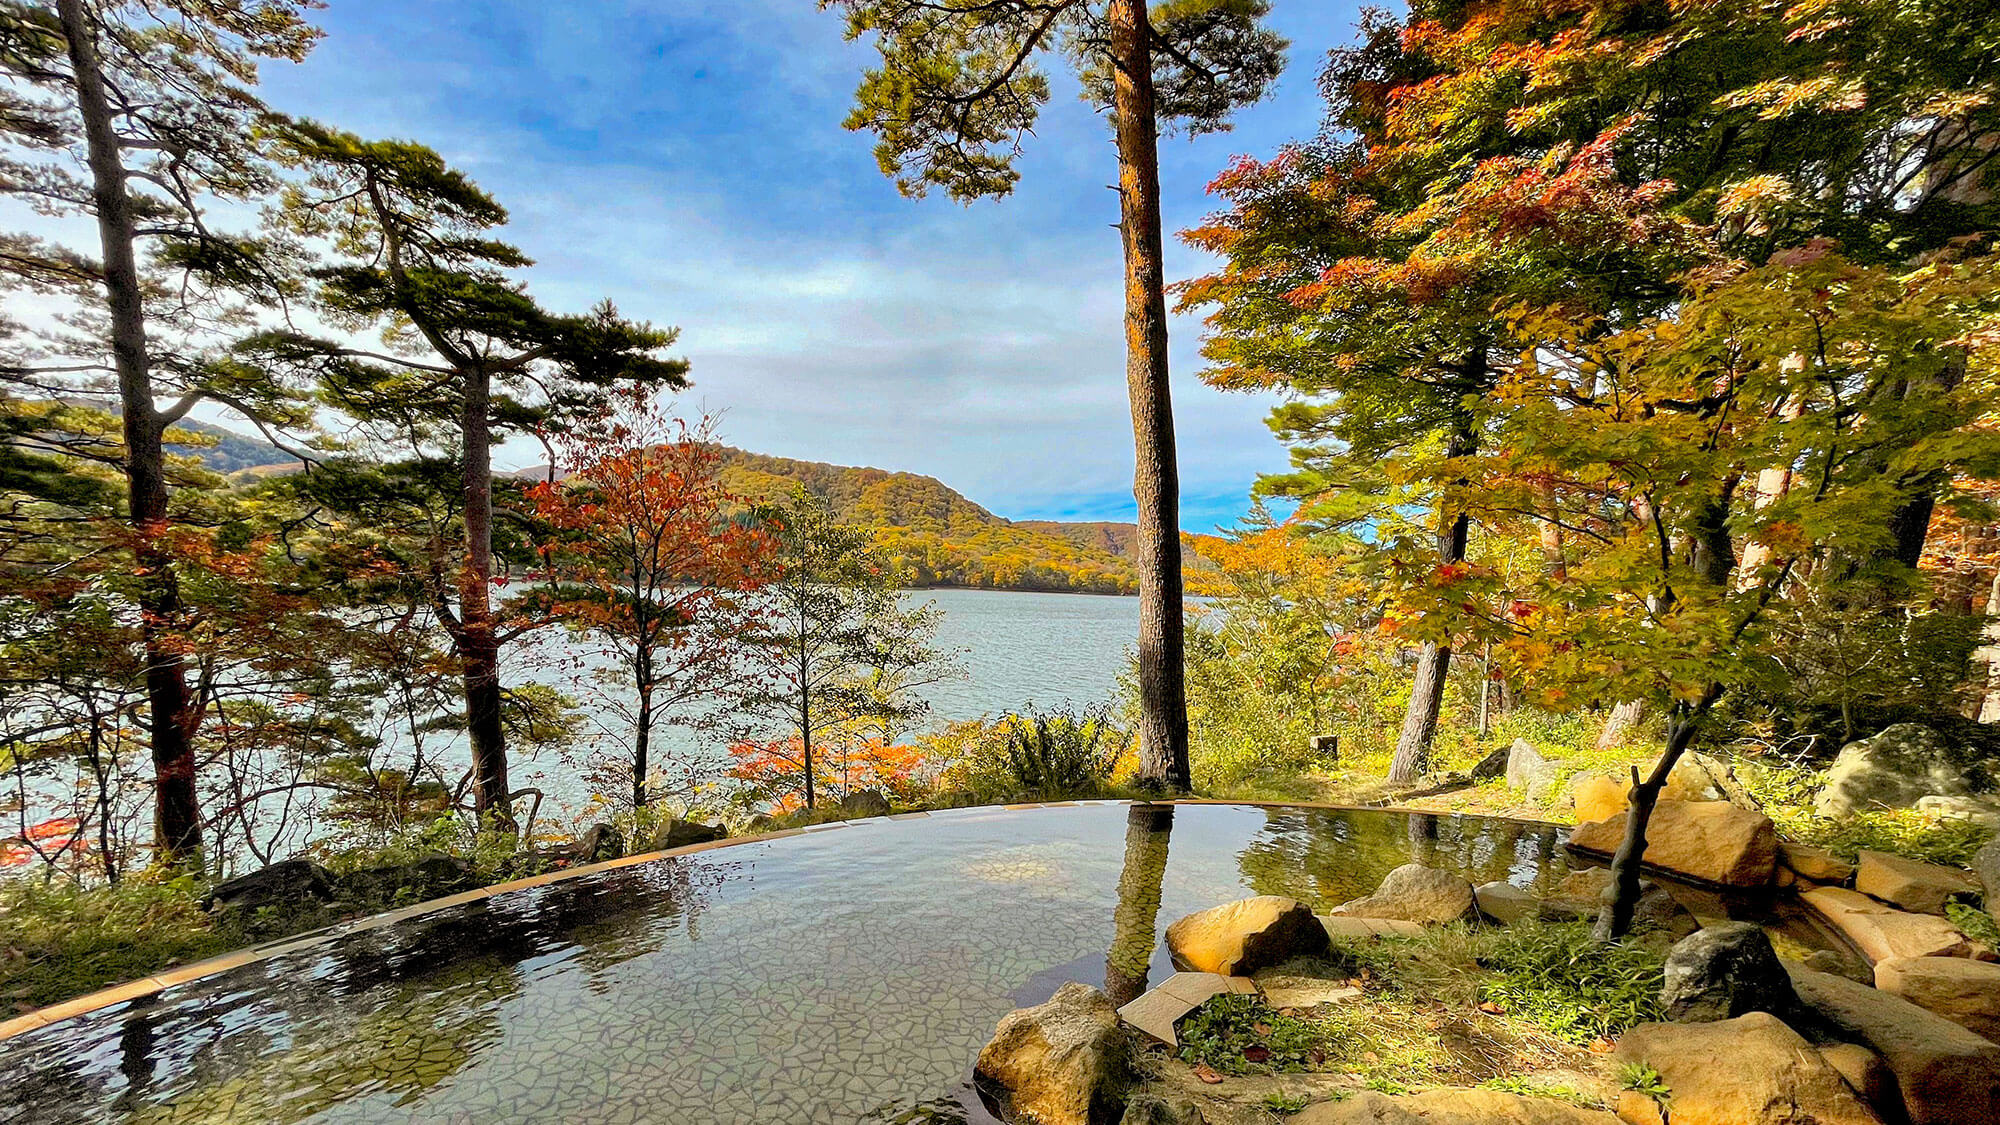 【ひばらみの湯】桧原湖を眼下に望む露天風呂。紅葉で色づいた木々と湖を眺めながらお寛ぎいただけます。